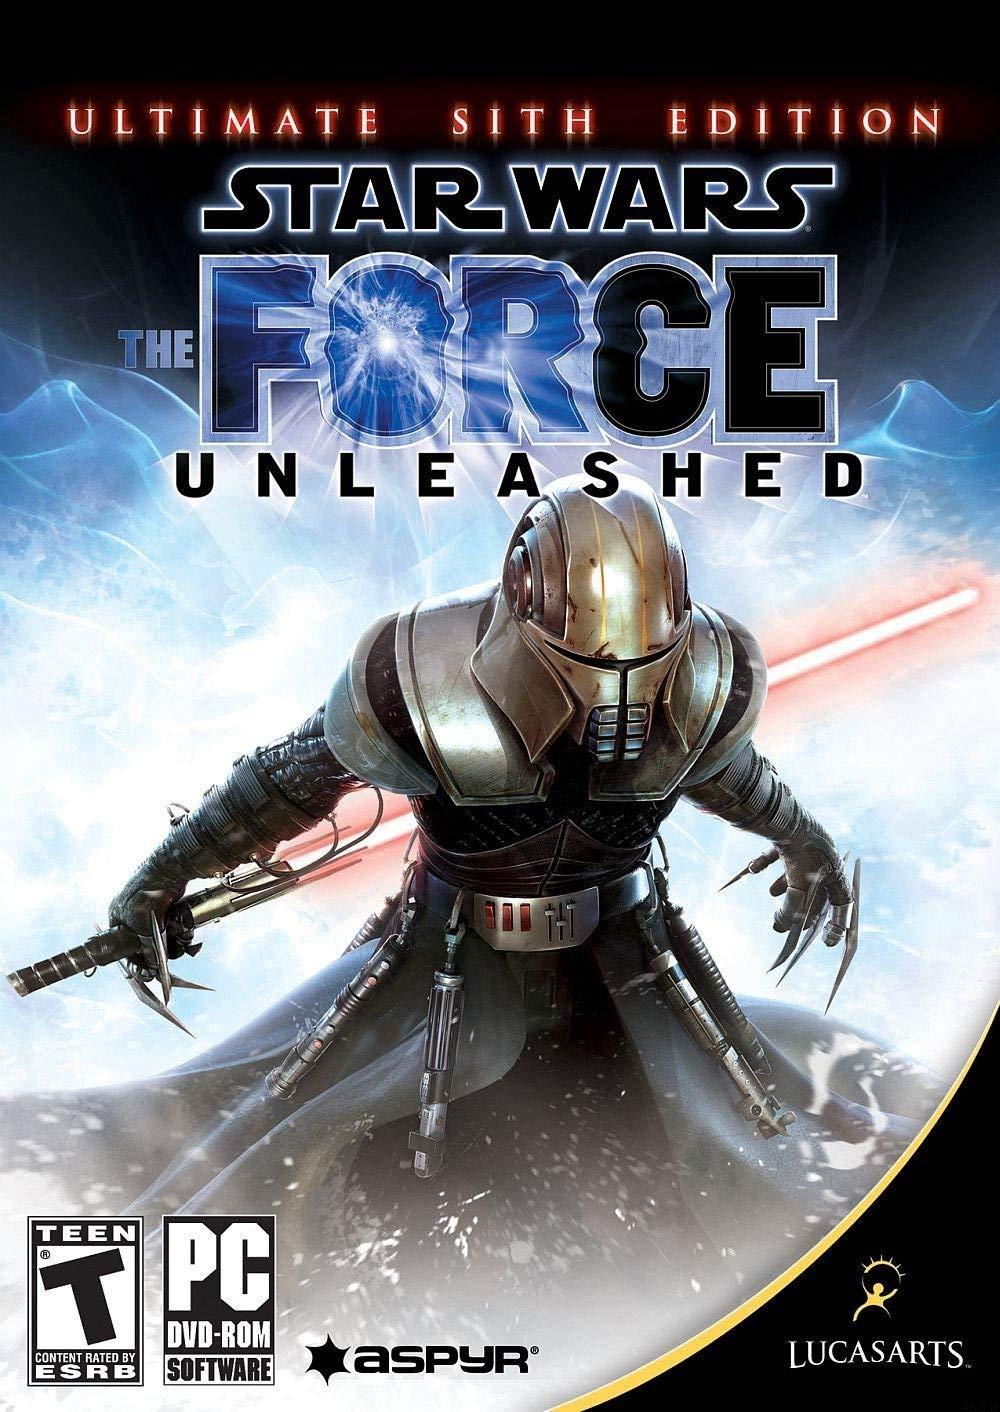 دانلود Star Wars: The Force Unleashed – Ultimate Sith Edition WII, PSP, PS3, XBOX 360 – بازی جنگ ستارگان: نیروی رها یافته – نسخه نهایی